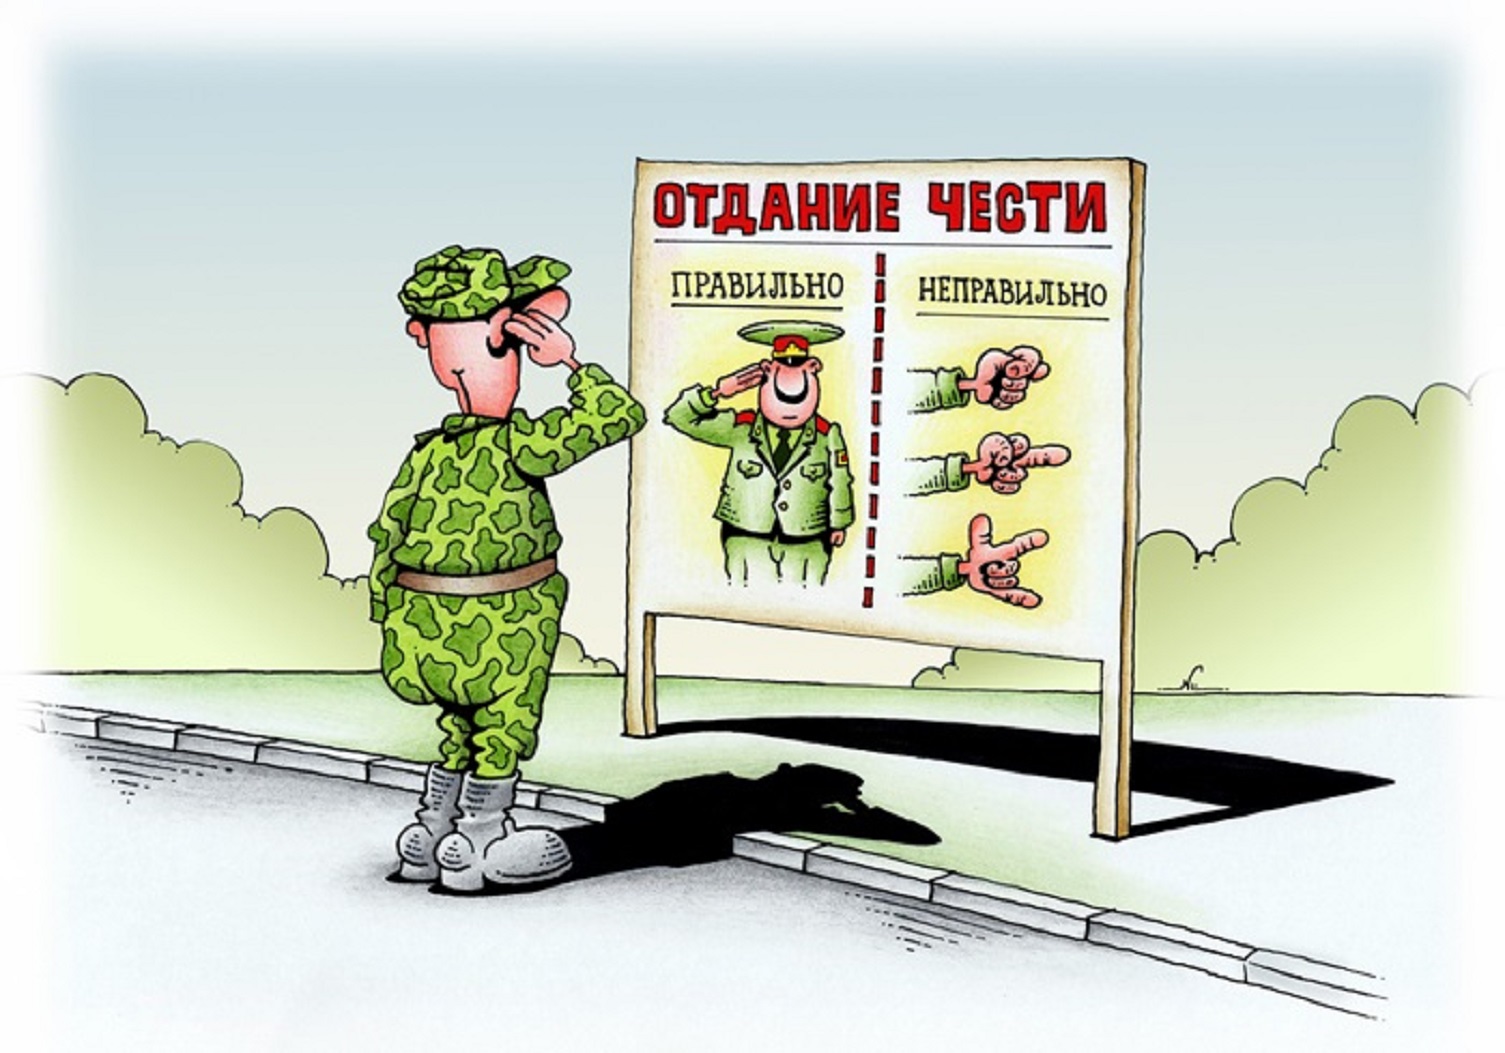 Глупый честь. Армия приколы. Военные карикатуры. Анекдоты про армию в картинках. Карикатуры про армию.